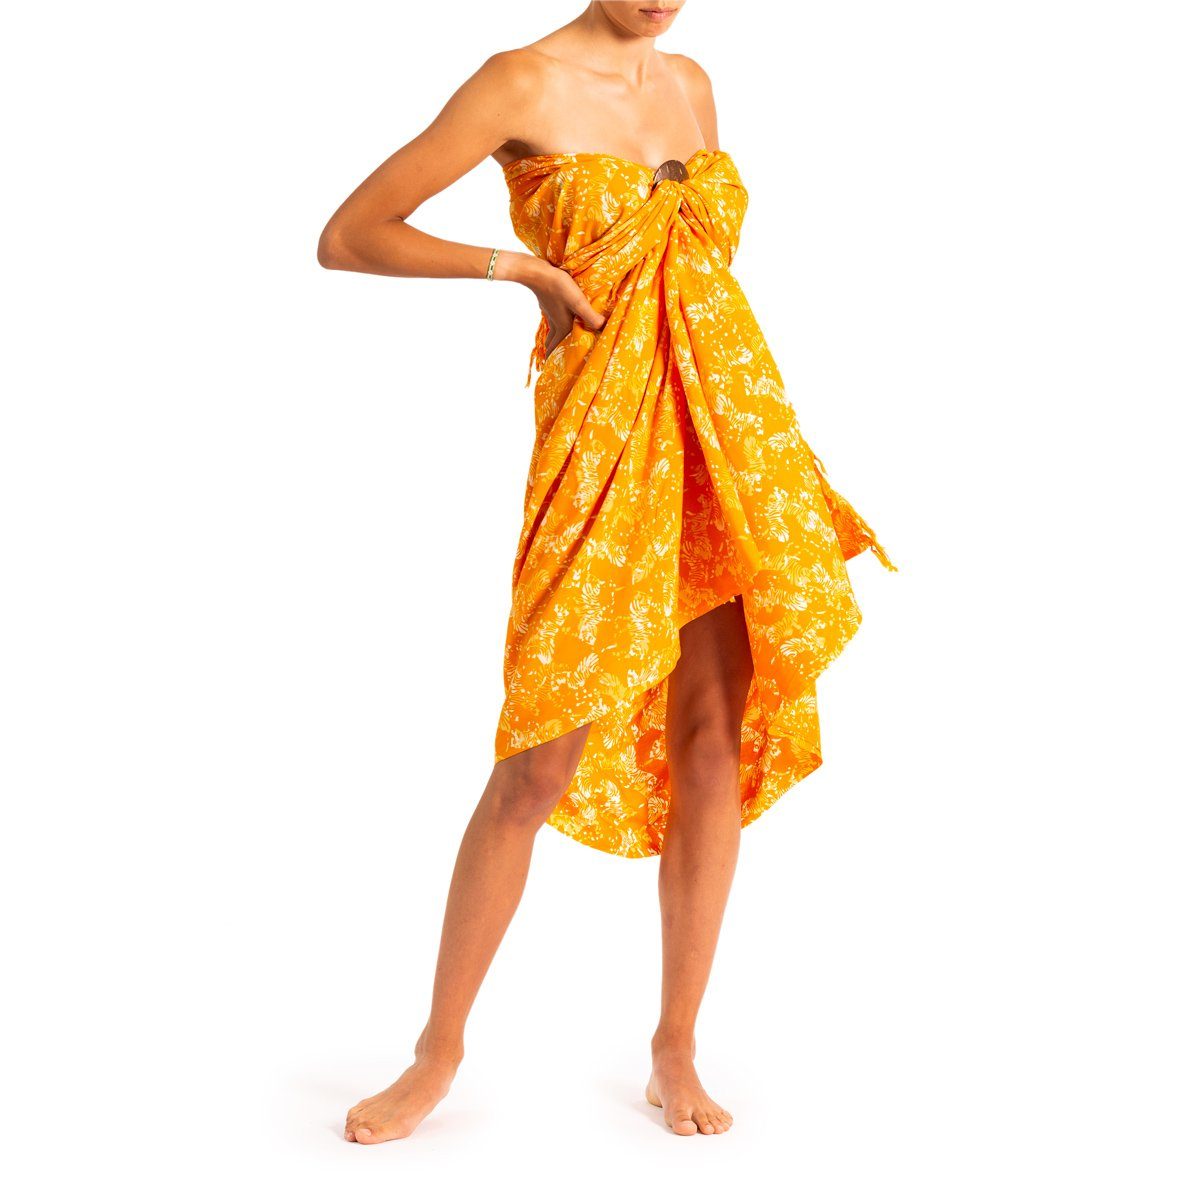 PANASIAM Pareo Sarong Wachsbatik Orangetöne aus hochwertiger Viskose Strandtuch, Strandkleid Bikini Cover-up Tuch für den Strand Schultertuch Halstuch B404 orange